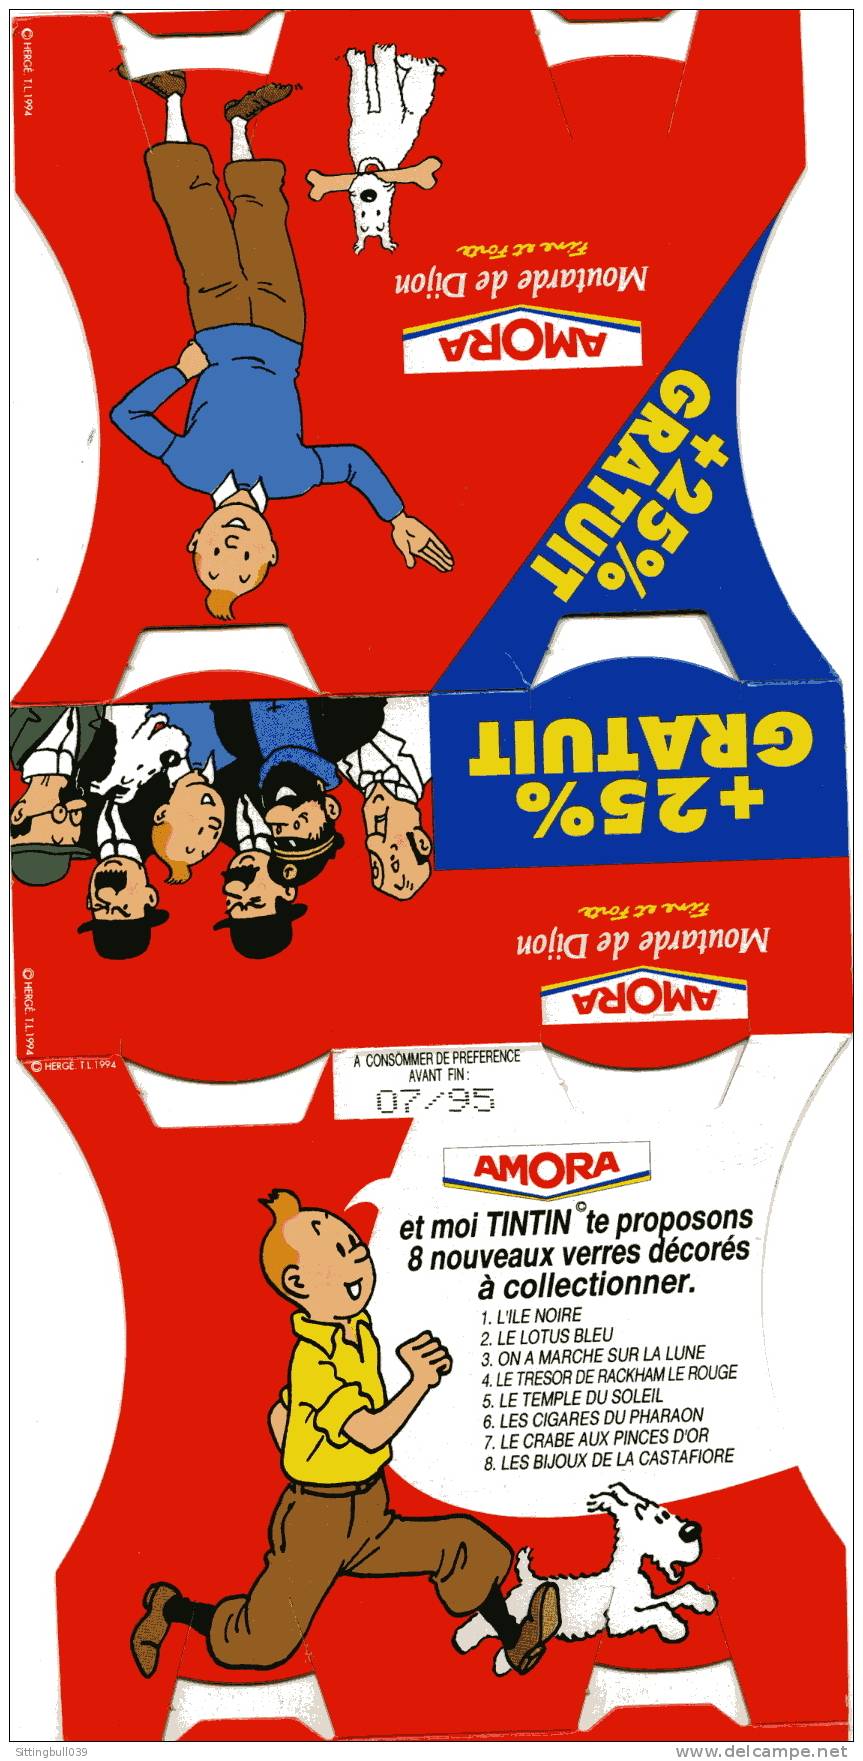 TINTIN. PUBLICITE AMORA. LA MOUTARDE QUI RELEVE LE PLAT. Hergé 1994 - Objets Publicitaires